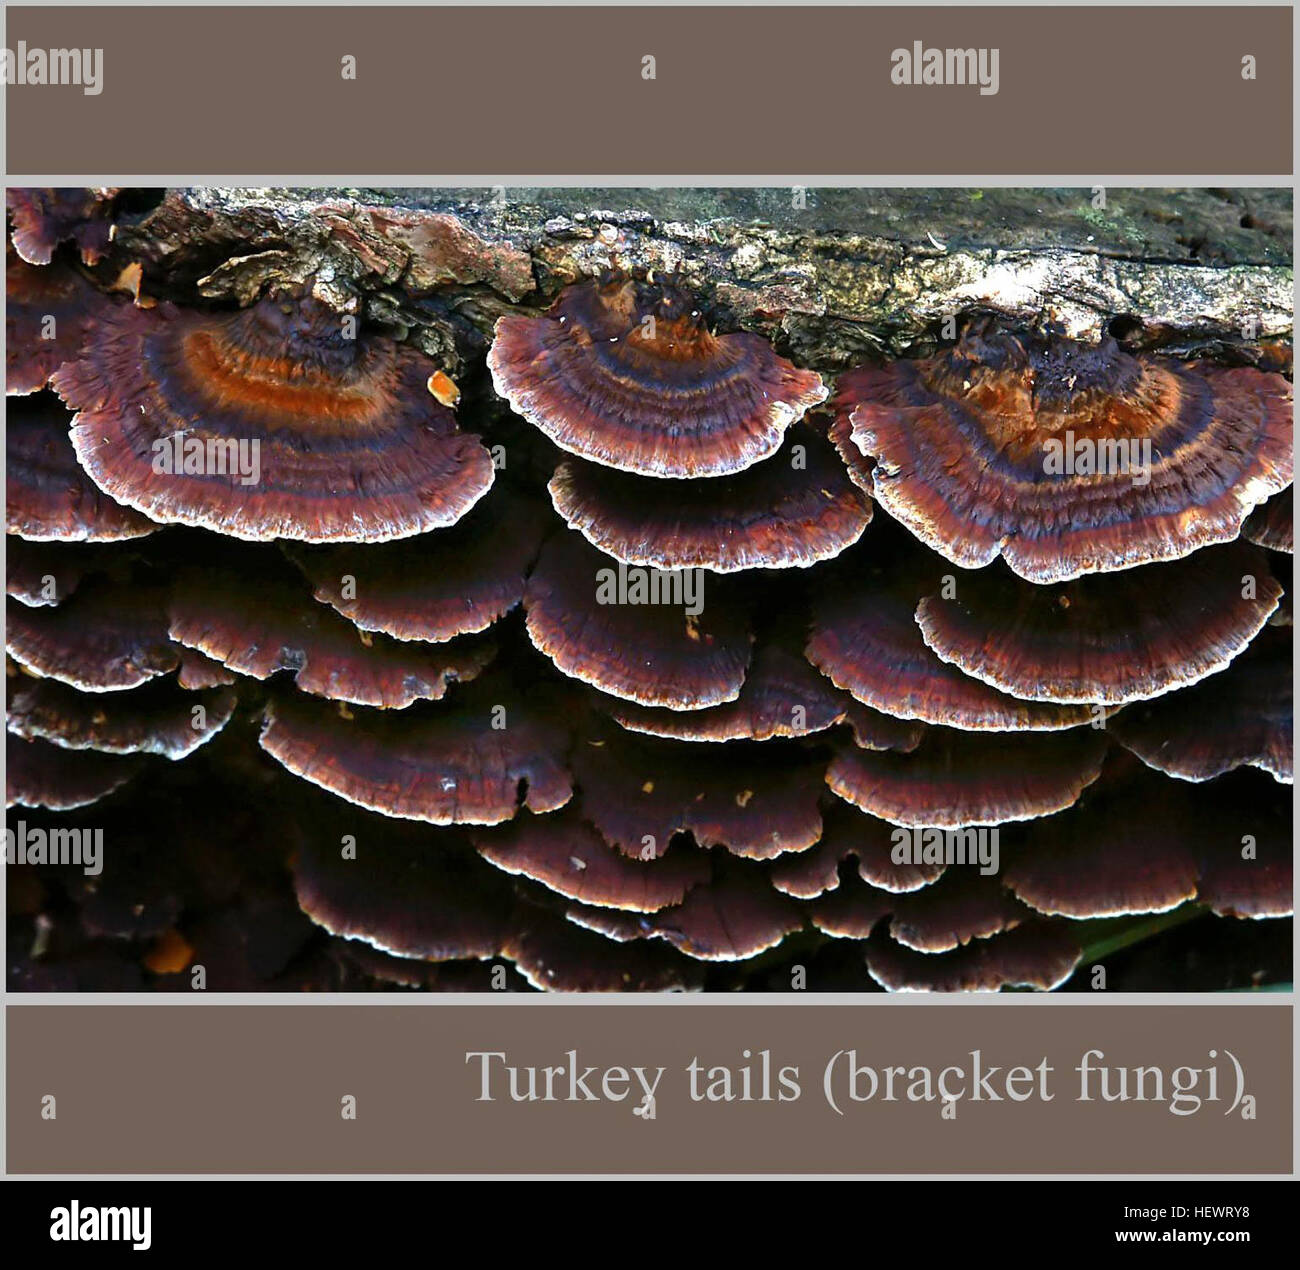 ication (,),Fungi.,Turkey tails bracket fungi. Stock Photo